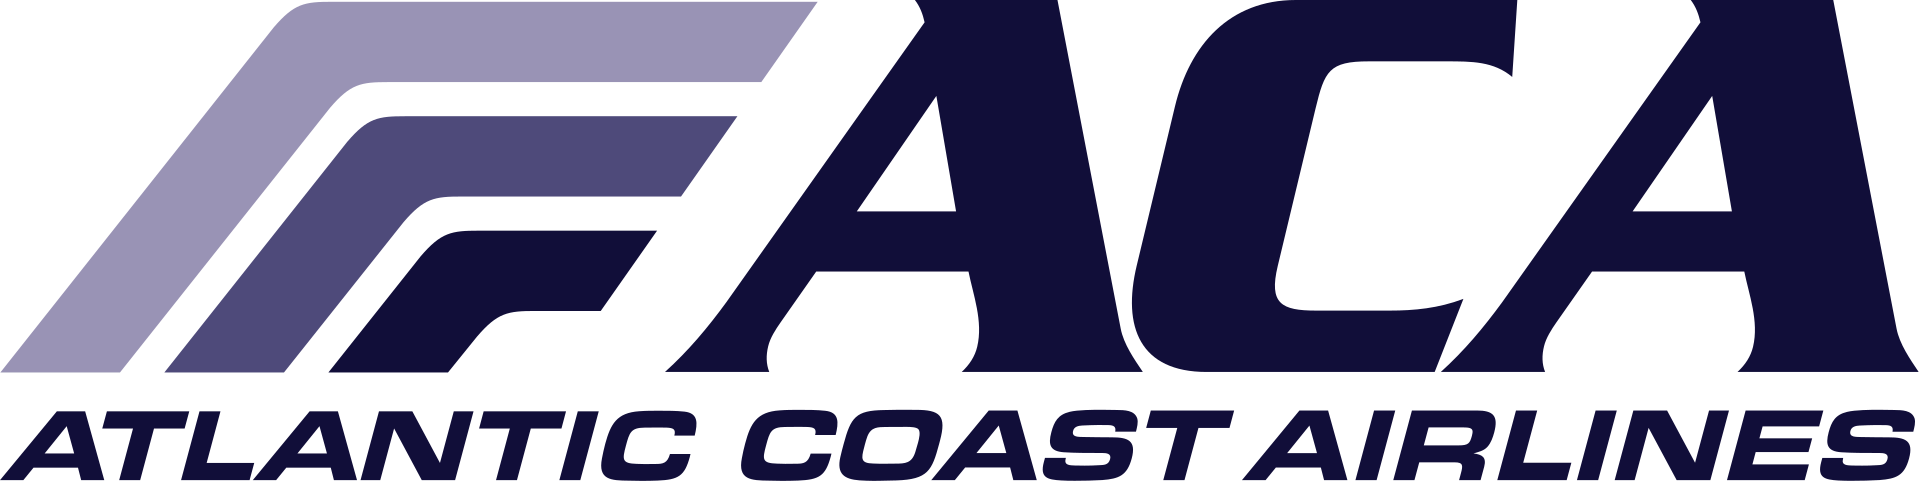 Atlantic Coast Airlines